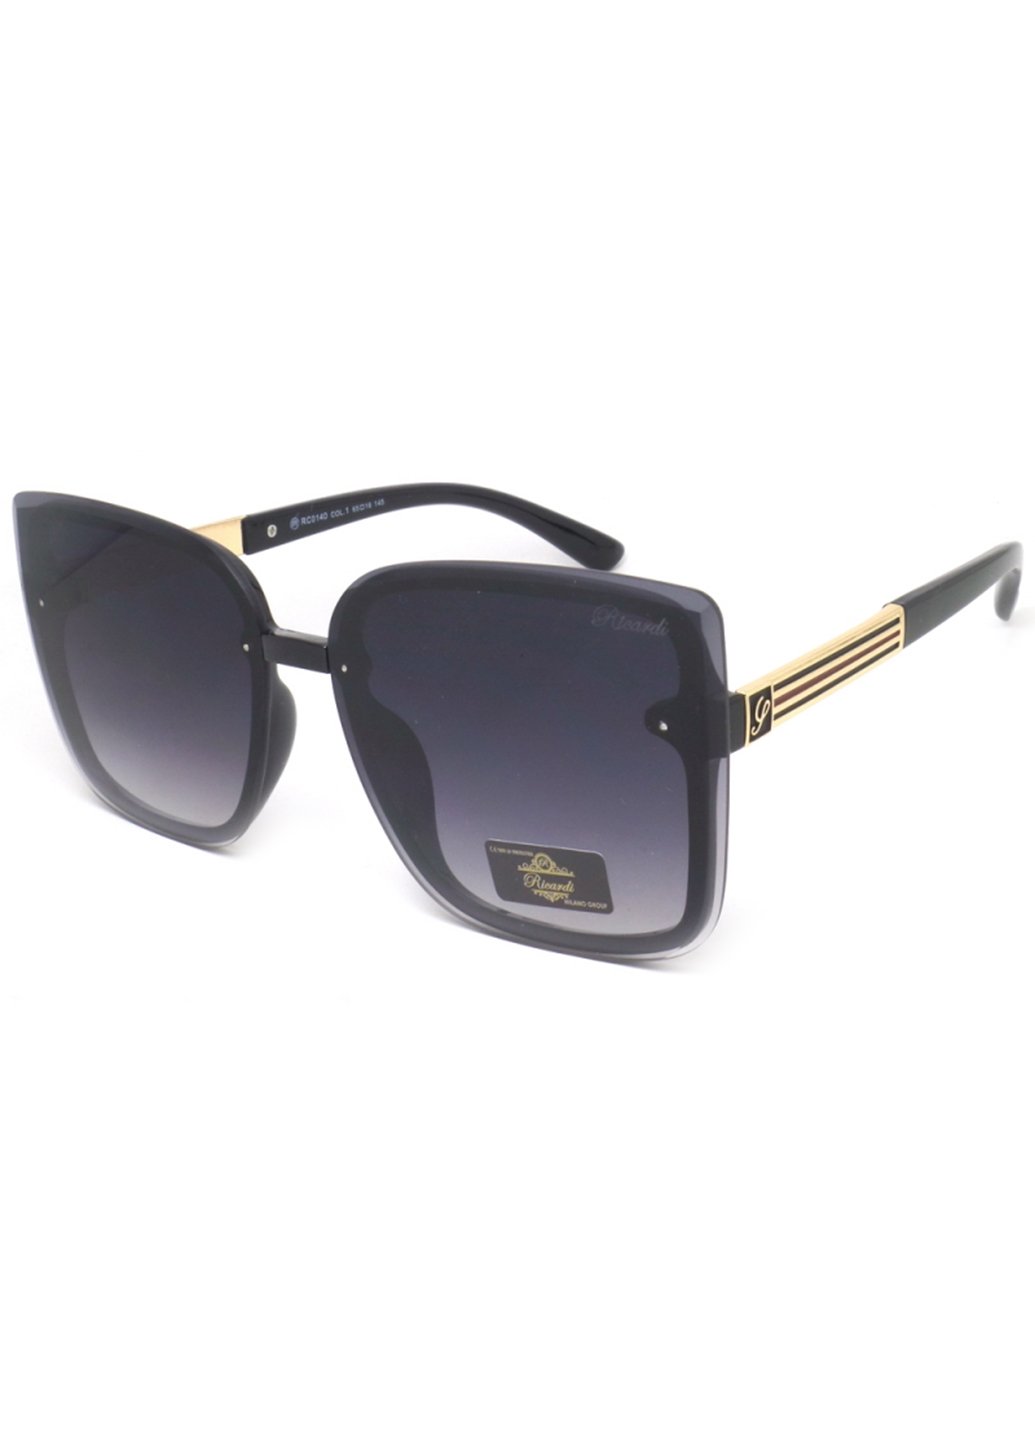 Купить Женские солнцезащитные очки Ricardi RC0140 110011 - Черный в интернет-магазине